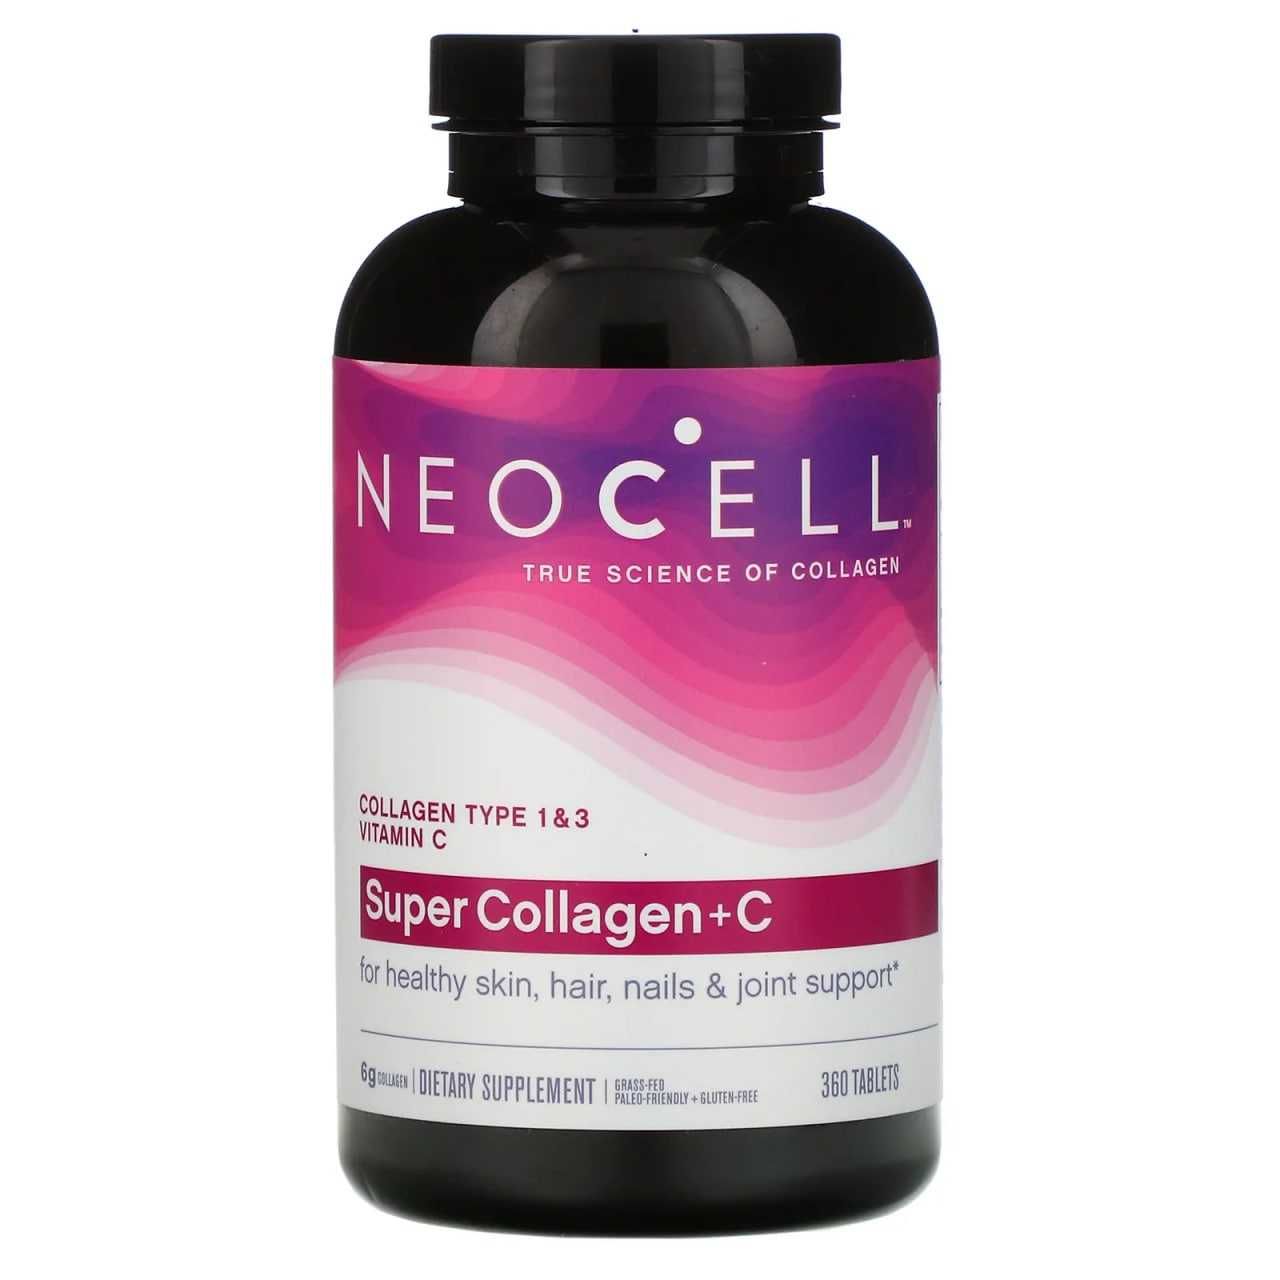 Neocell Collagen + C, коллаген типа 1 и 3. kollagen, калаген, kalagen